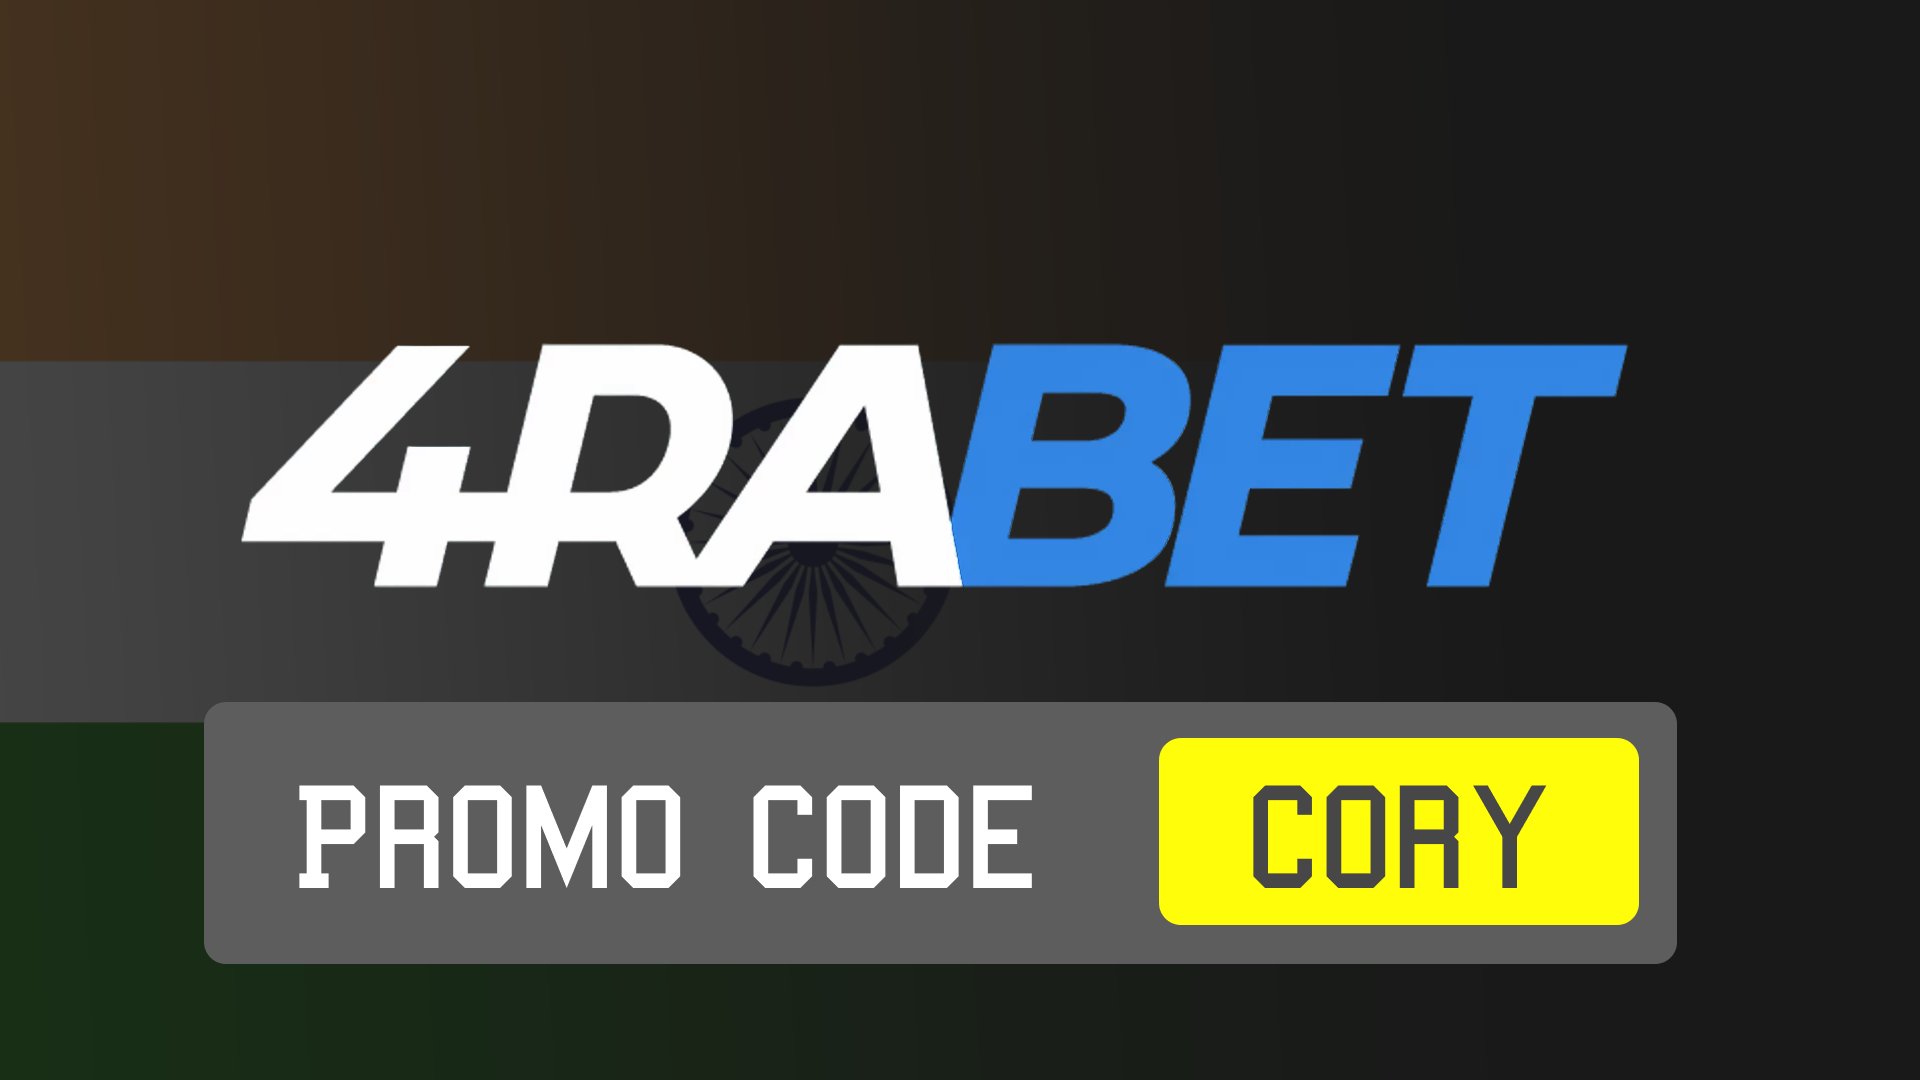 4rabet promo code in India